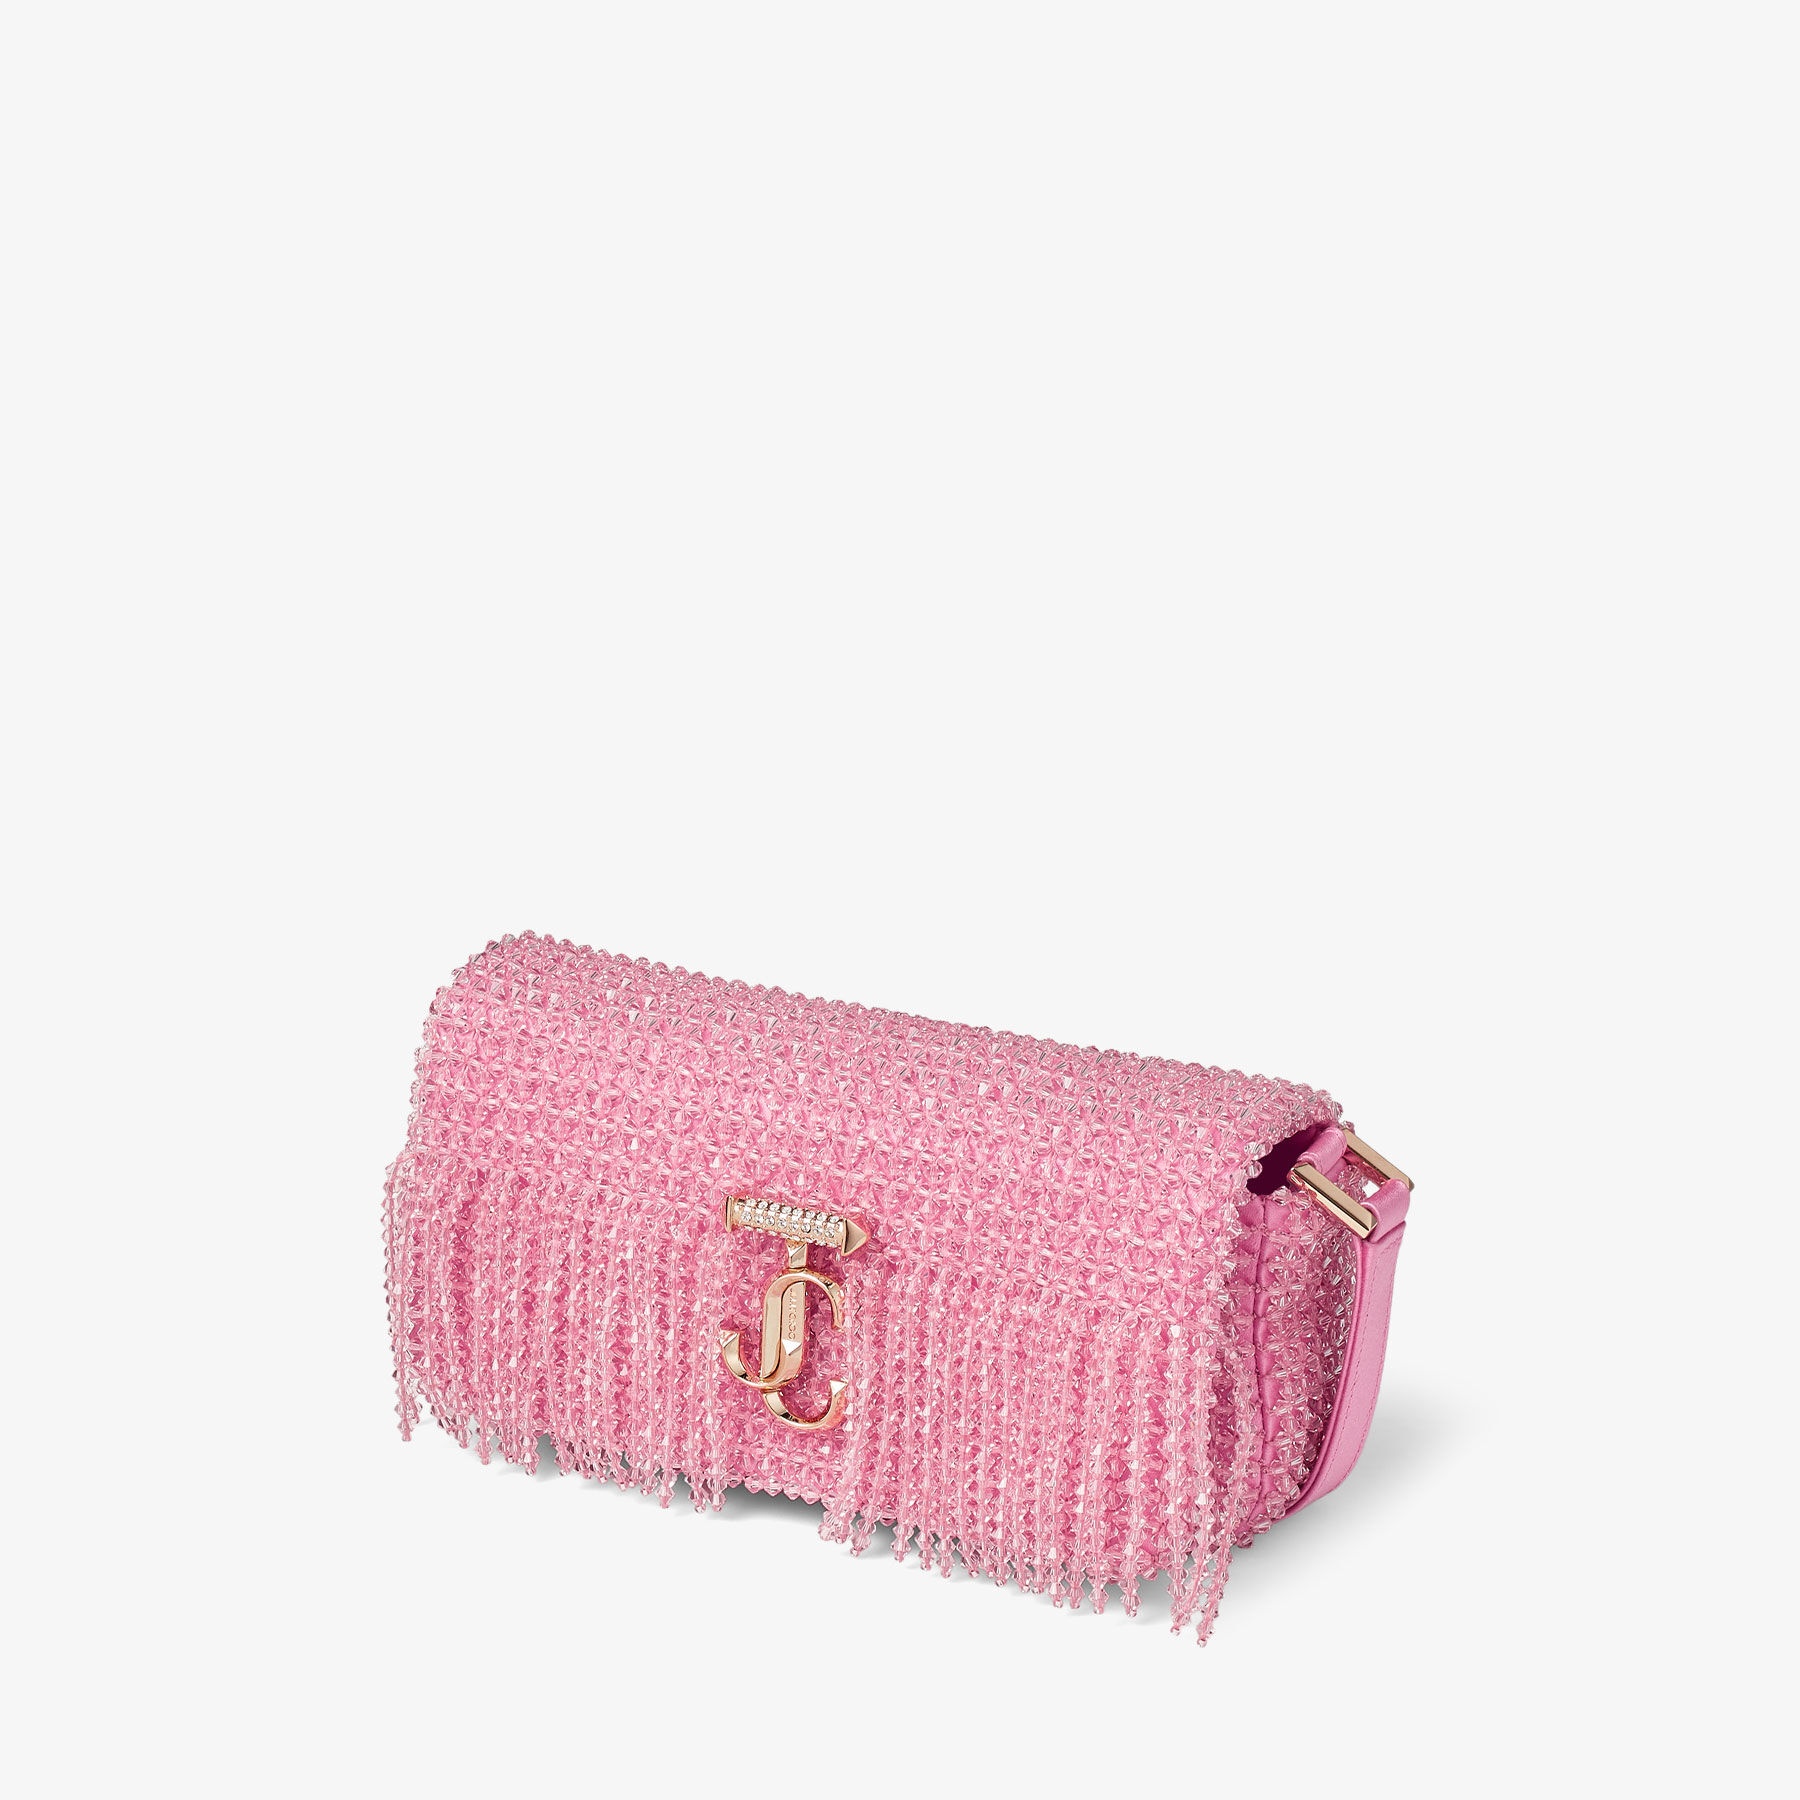 Avenue Mini Shoulder
Candy Pink Satin Mini Shoulder Bag with Crystal Fringe - 3